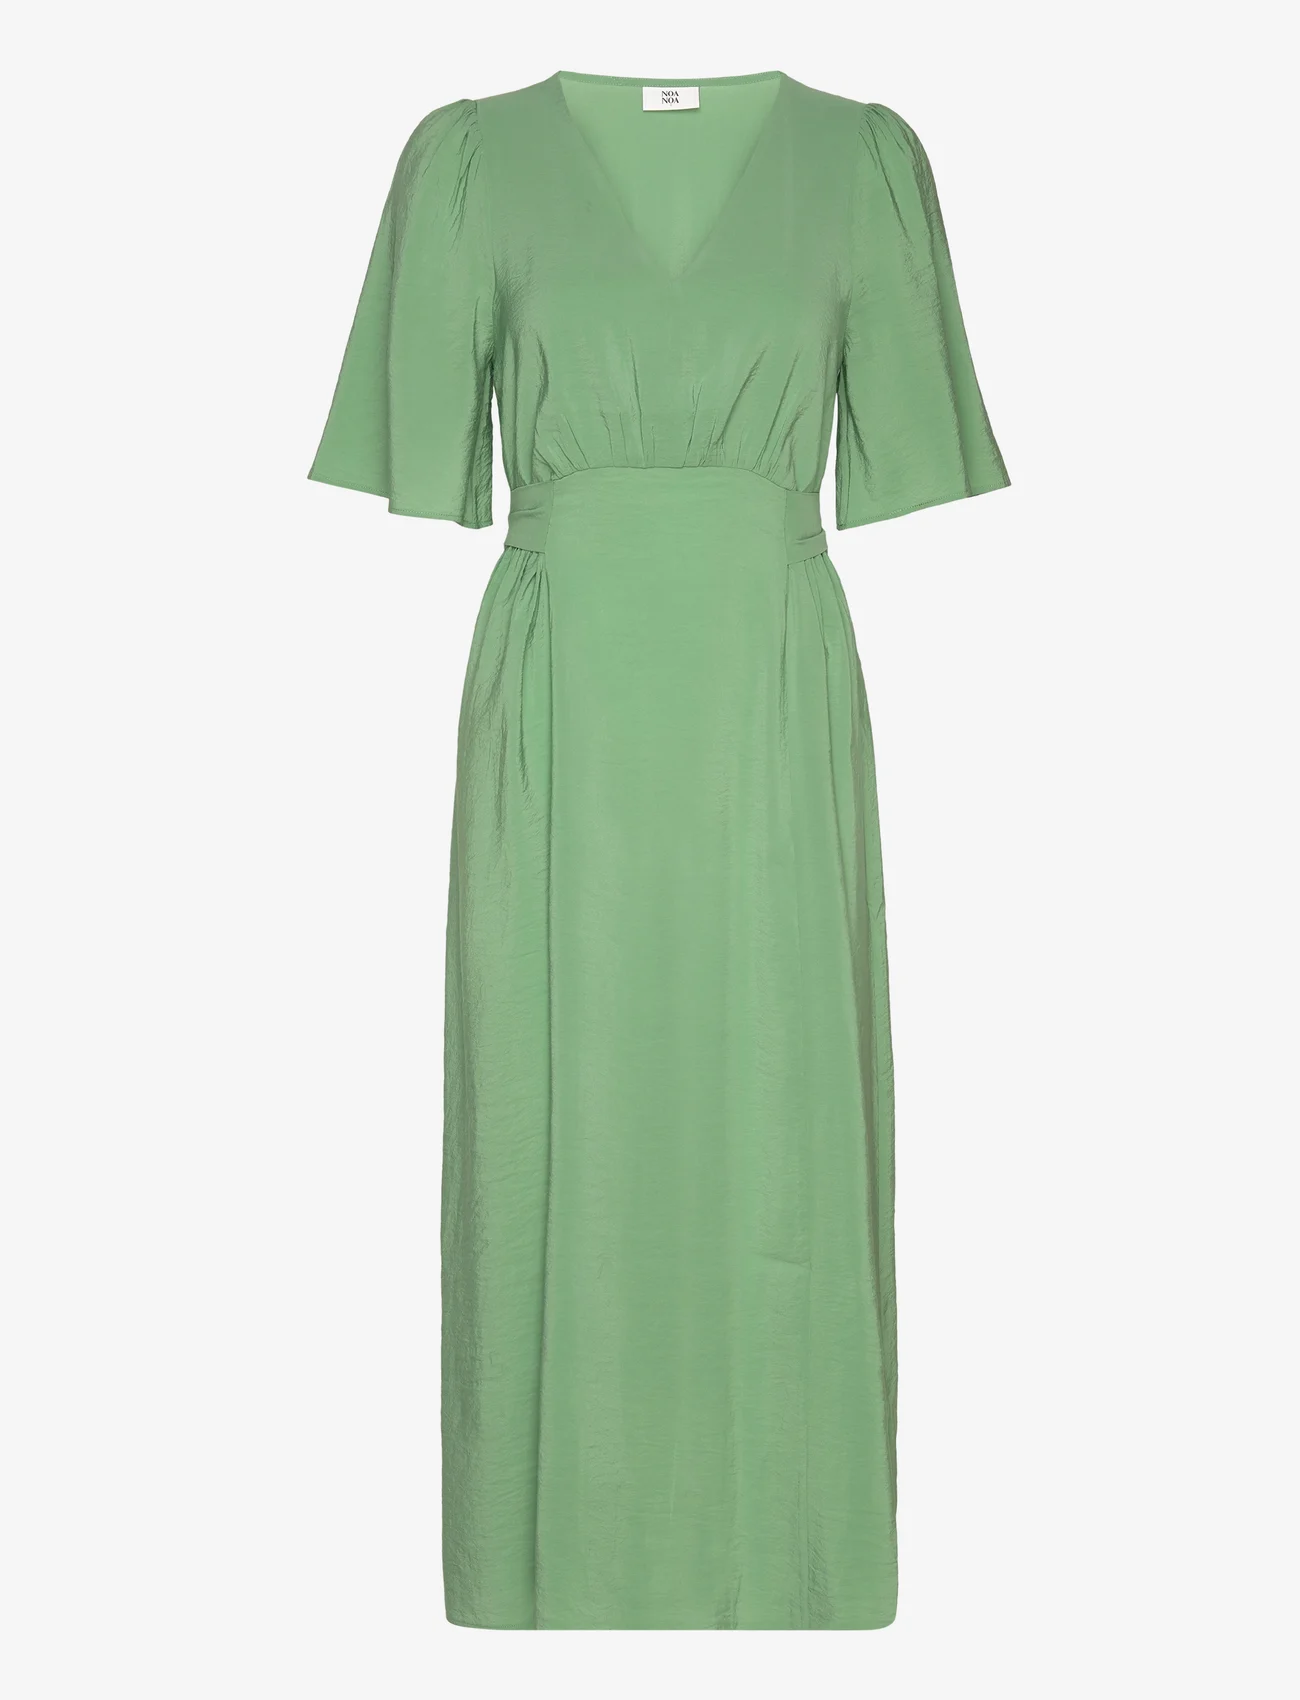 Noa Noa - FioneNN Dress - festklær til outlet-priser - stone green - 0